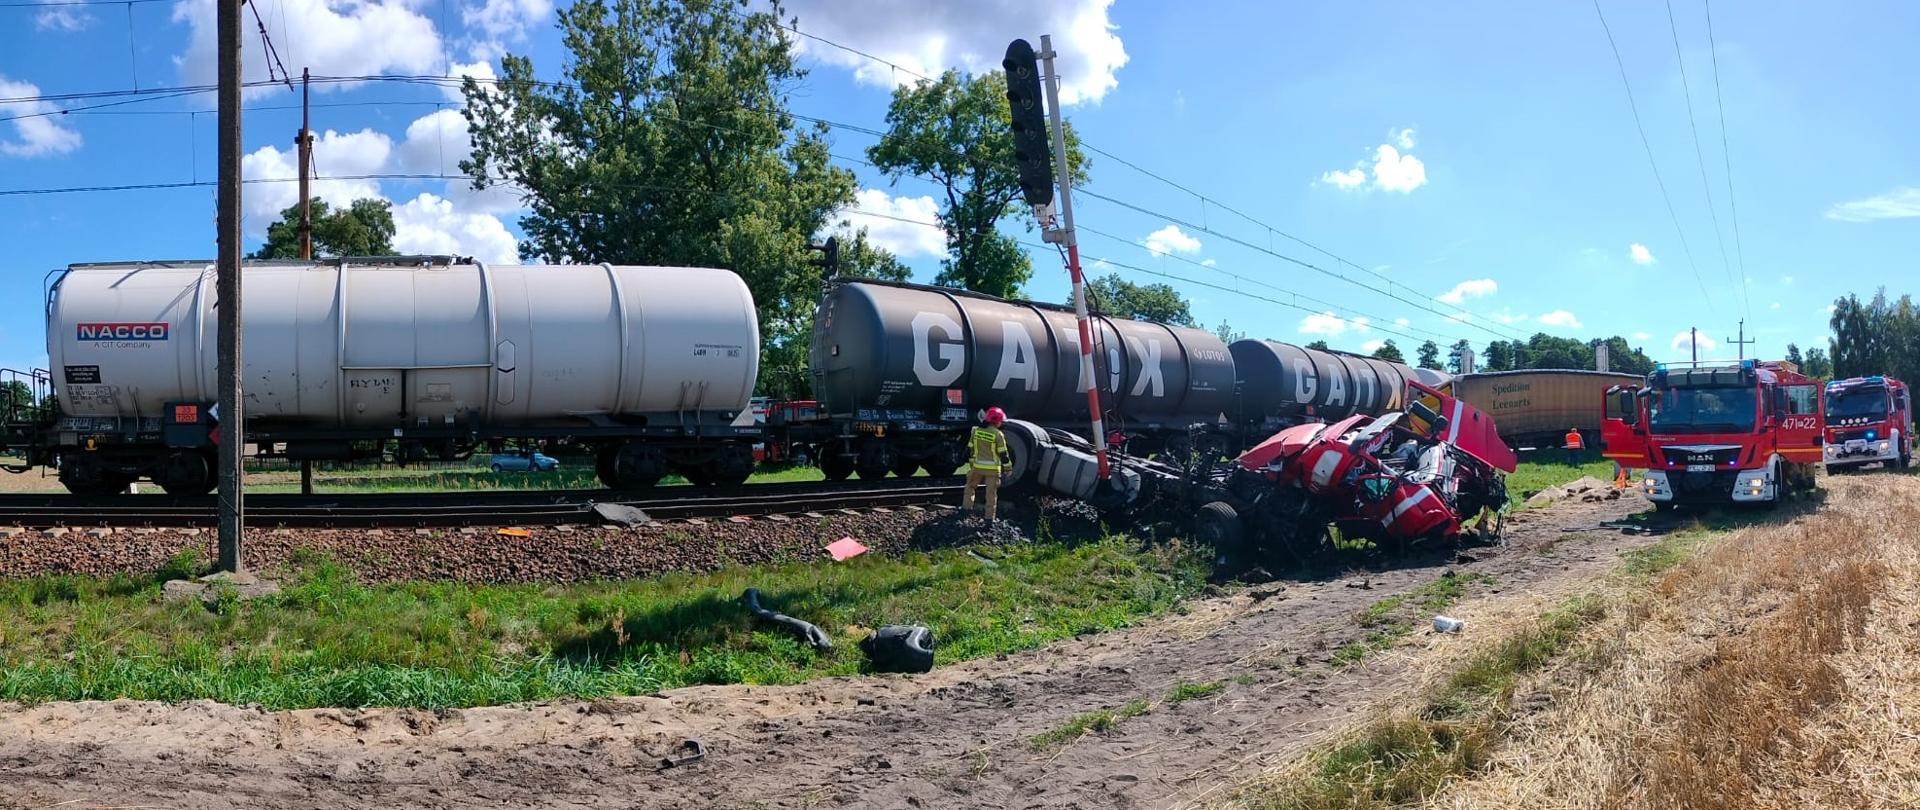 Zdjęcie przedstawia rozbity ciągnik siodłowy samochodu ciężarowego oraz wagony pociągu towarowego